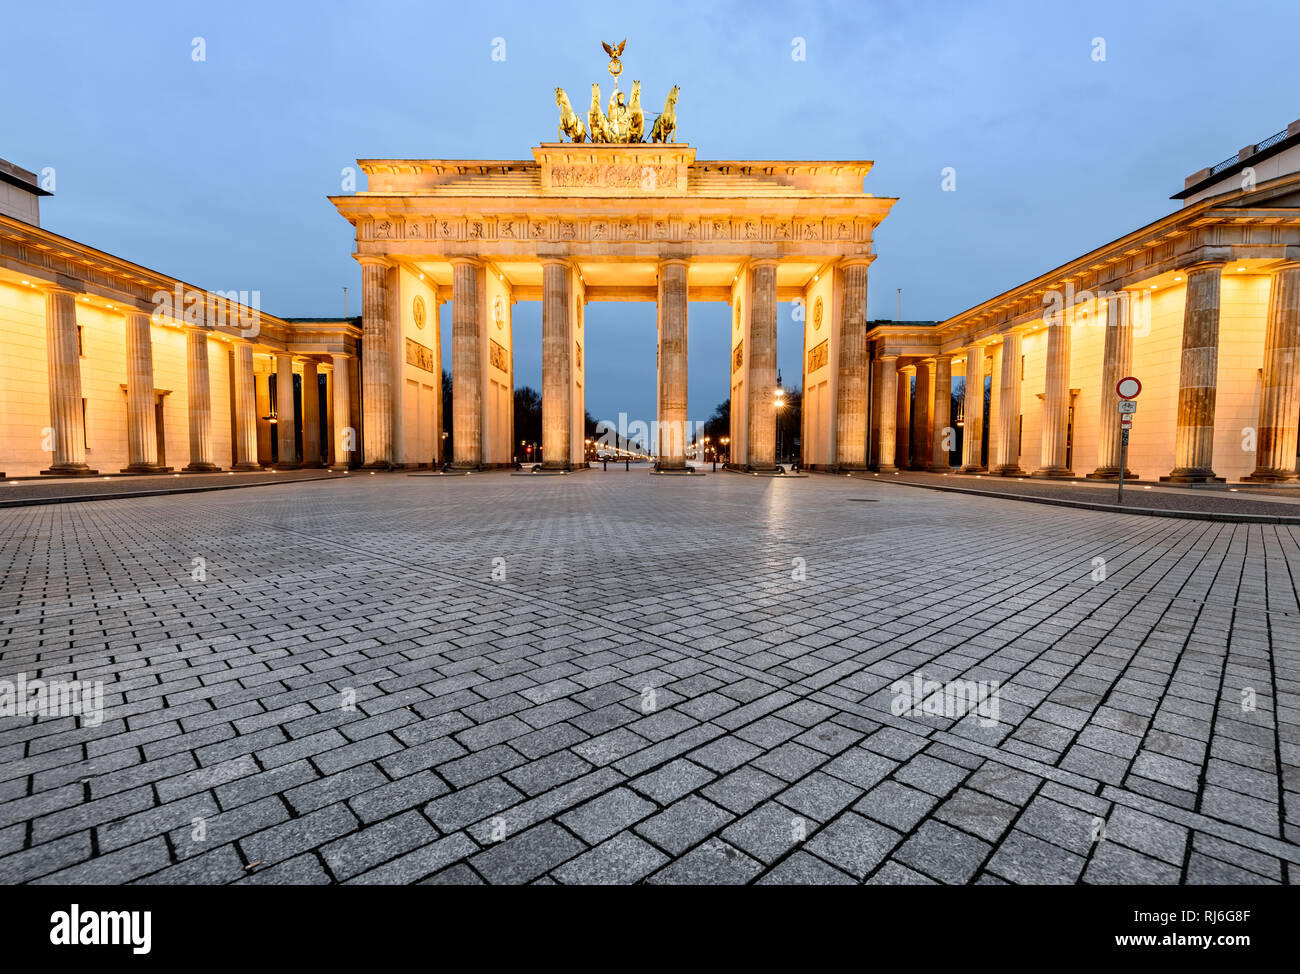 Puerta de Brandenburgo fue construido en el emplazamiento de una antigua  puerta de la ciudad que marcó el inicio de la carretera desde Berlín hasta  la ciudad de Brandenburgo Fotografía de stock -